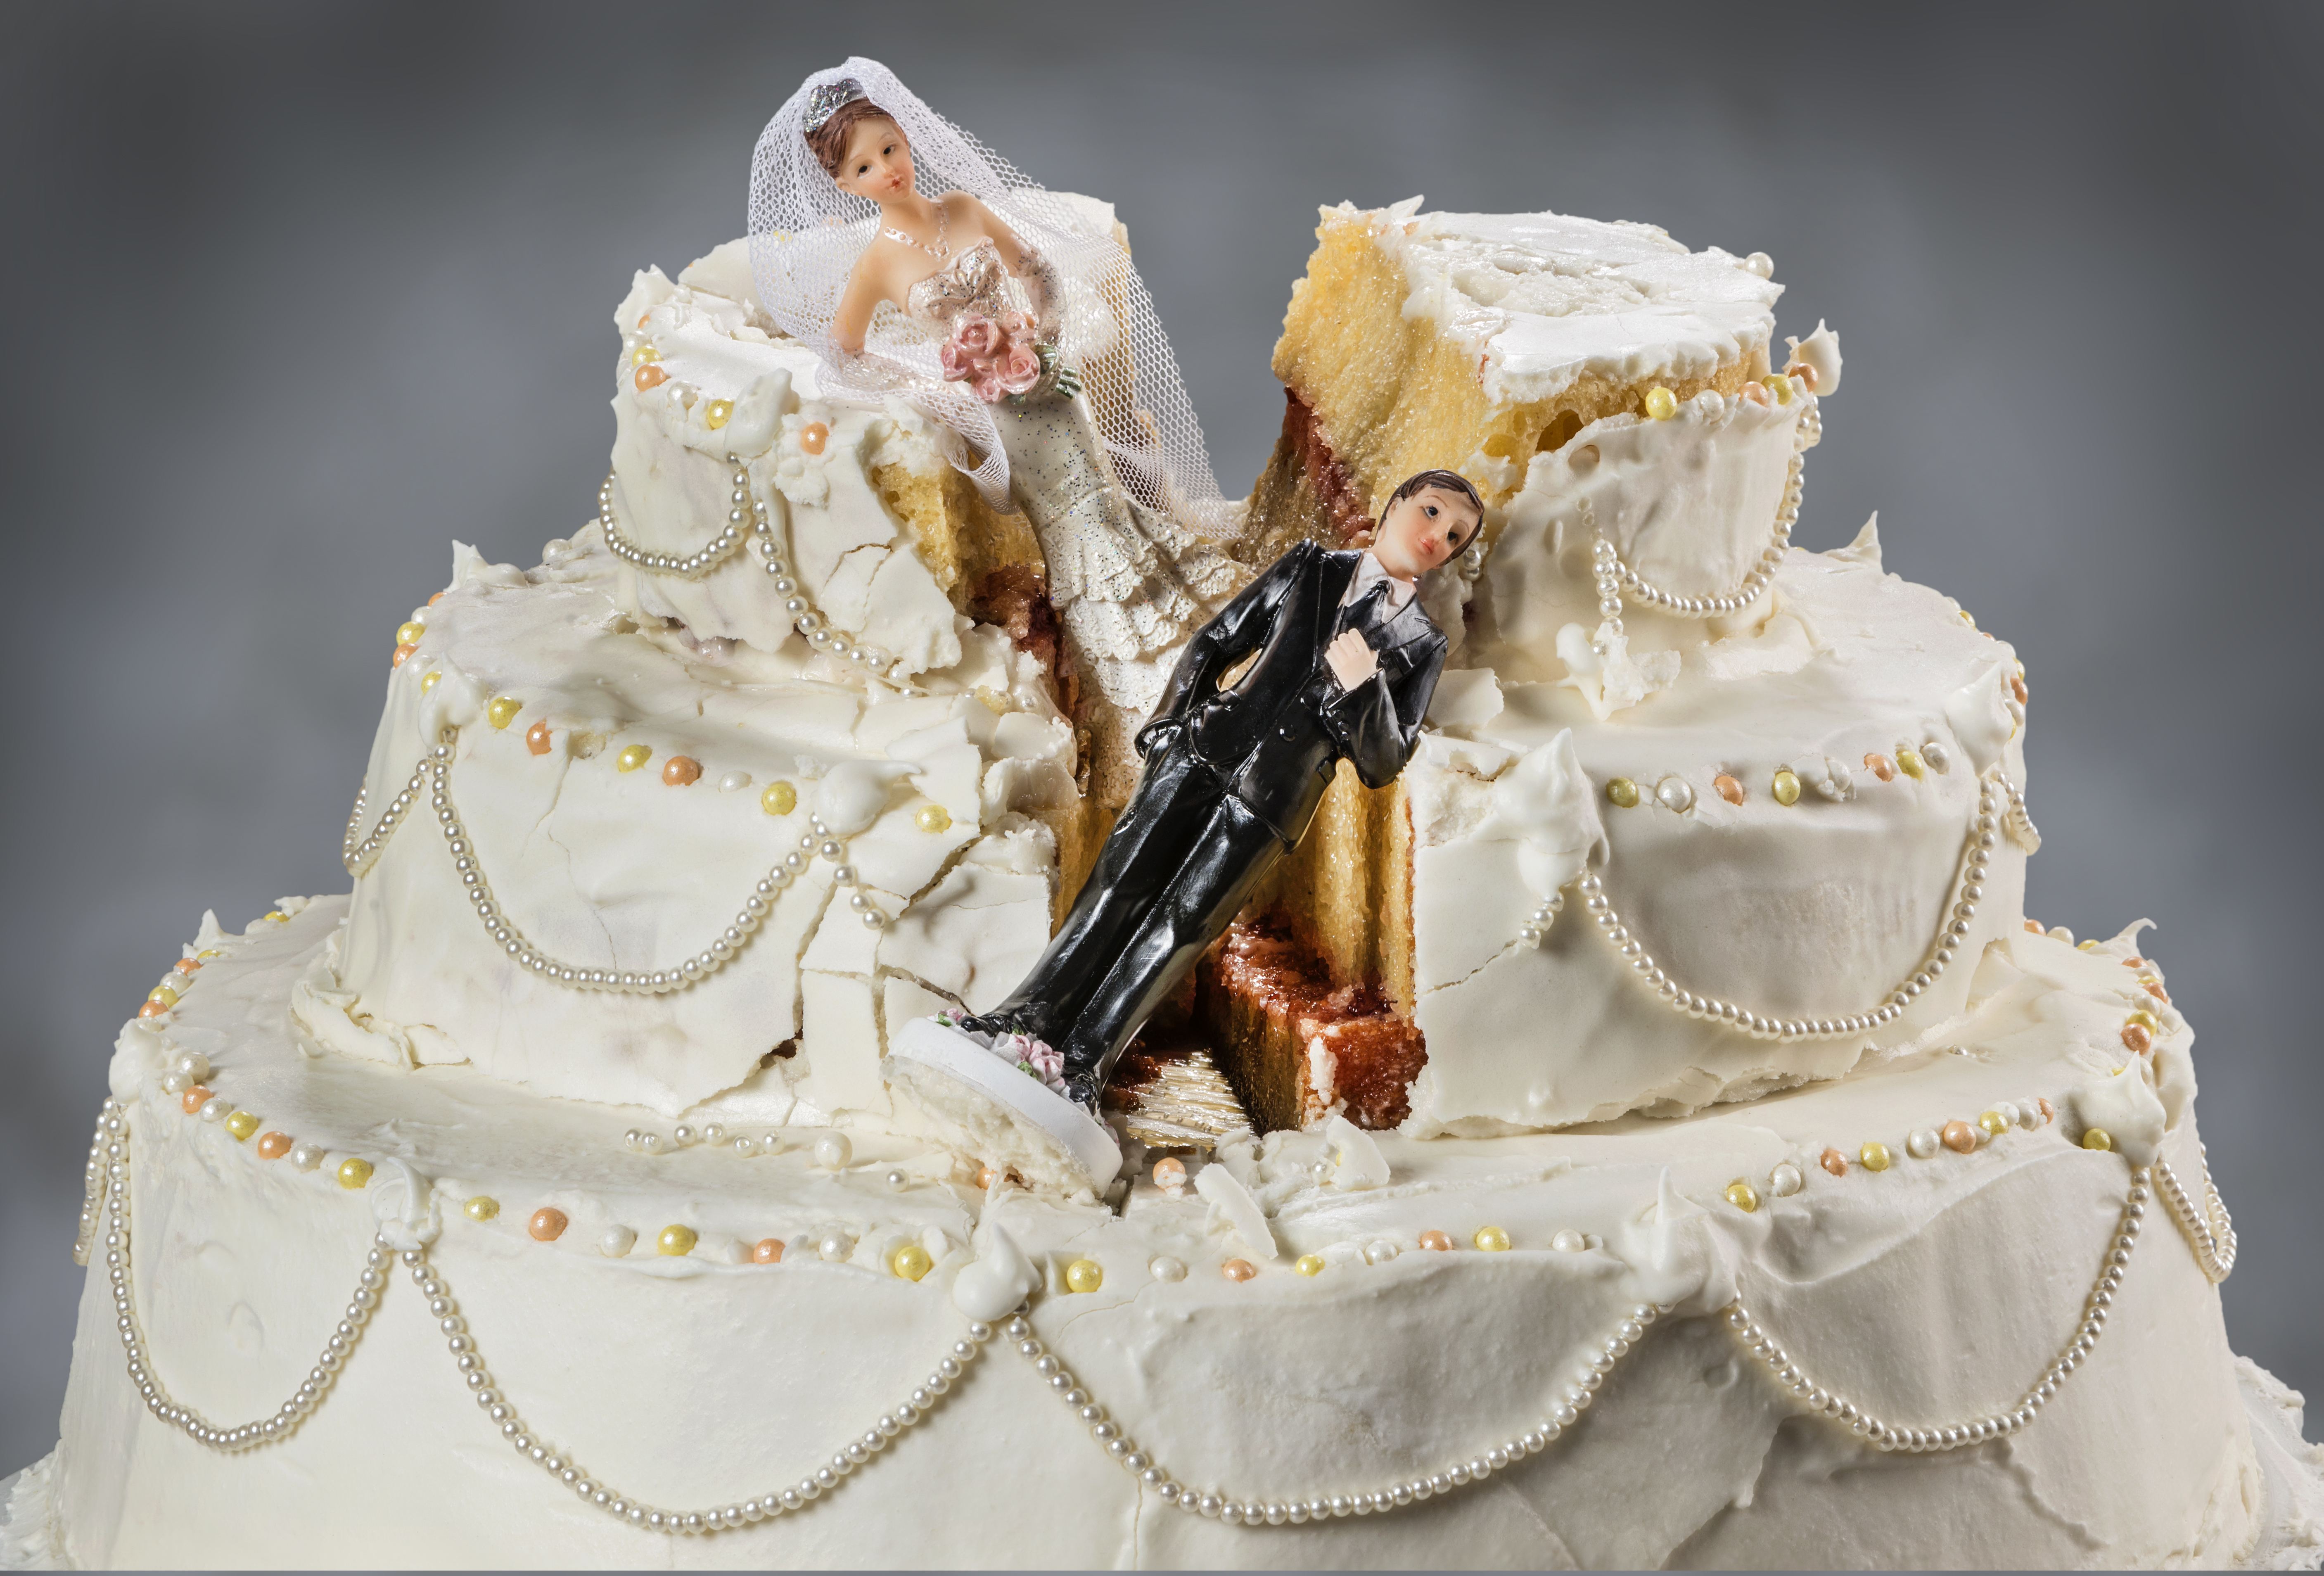 Ein Bild von einer ruinierten Hochzeitstorte | Quelle: Shutterstock